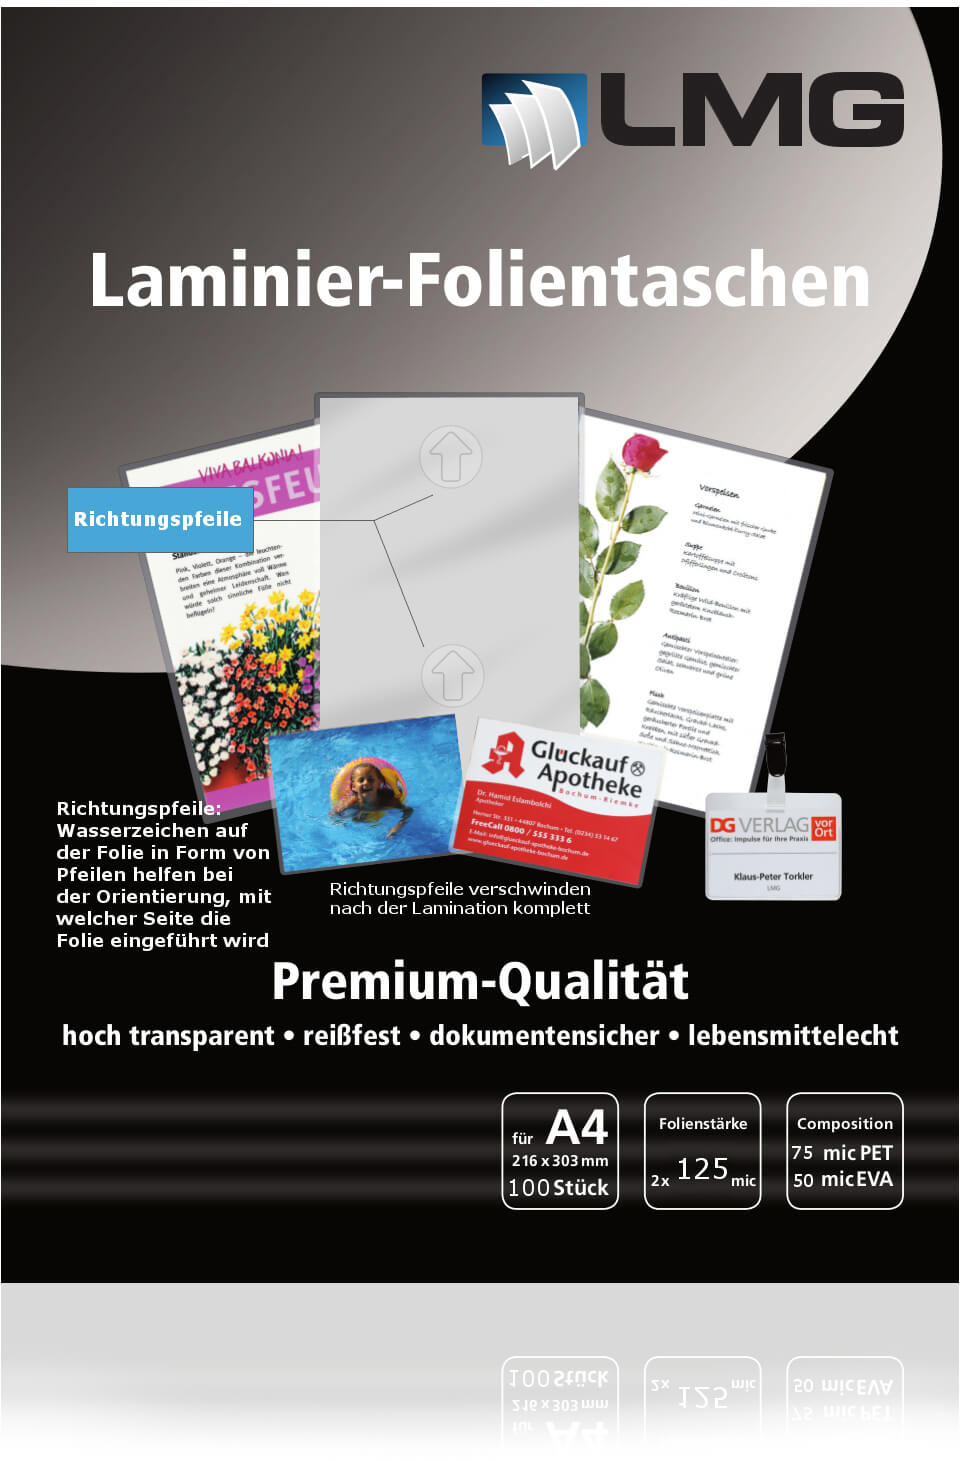 Laminierfolien A4 (216 x 303 mm), 2 x 125 mic, mit Pfeilen | Bestnr. LMGA4-125-PF